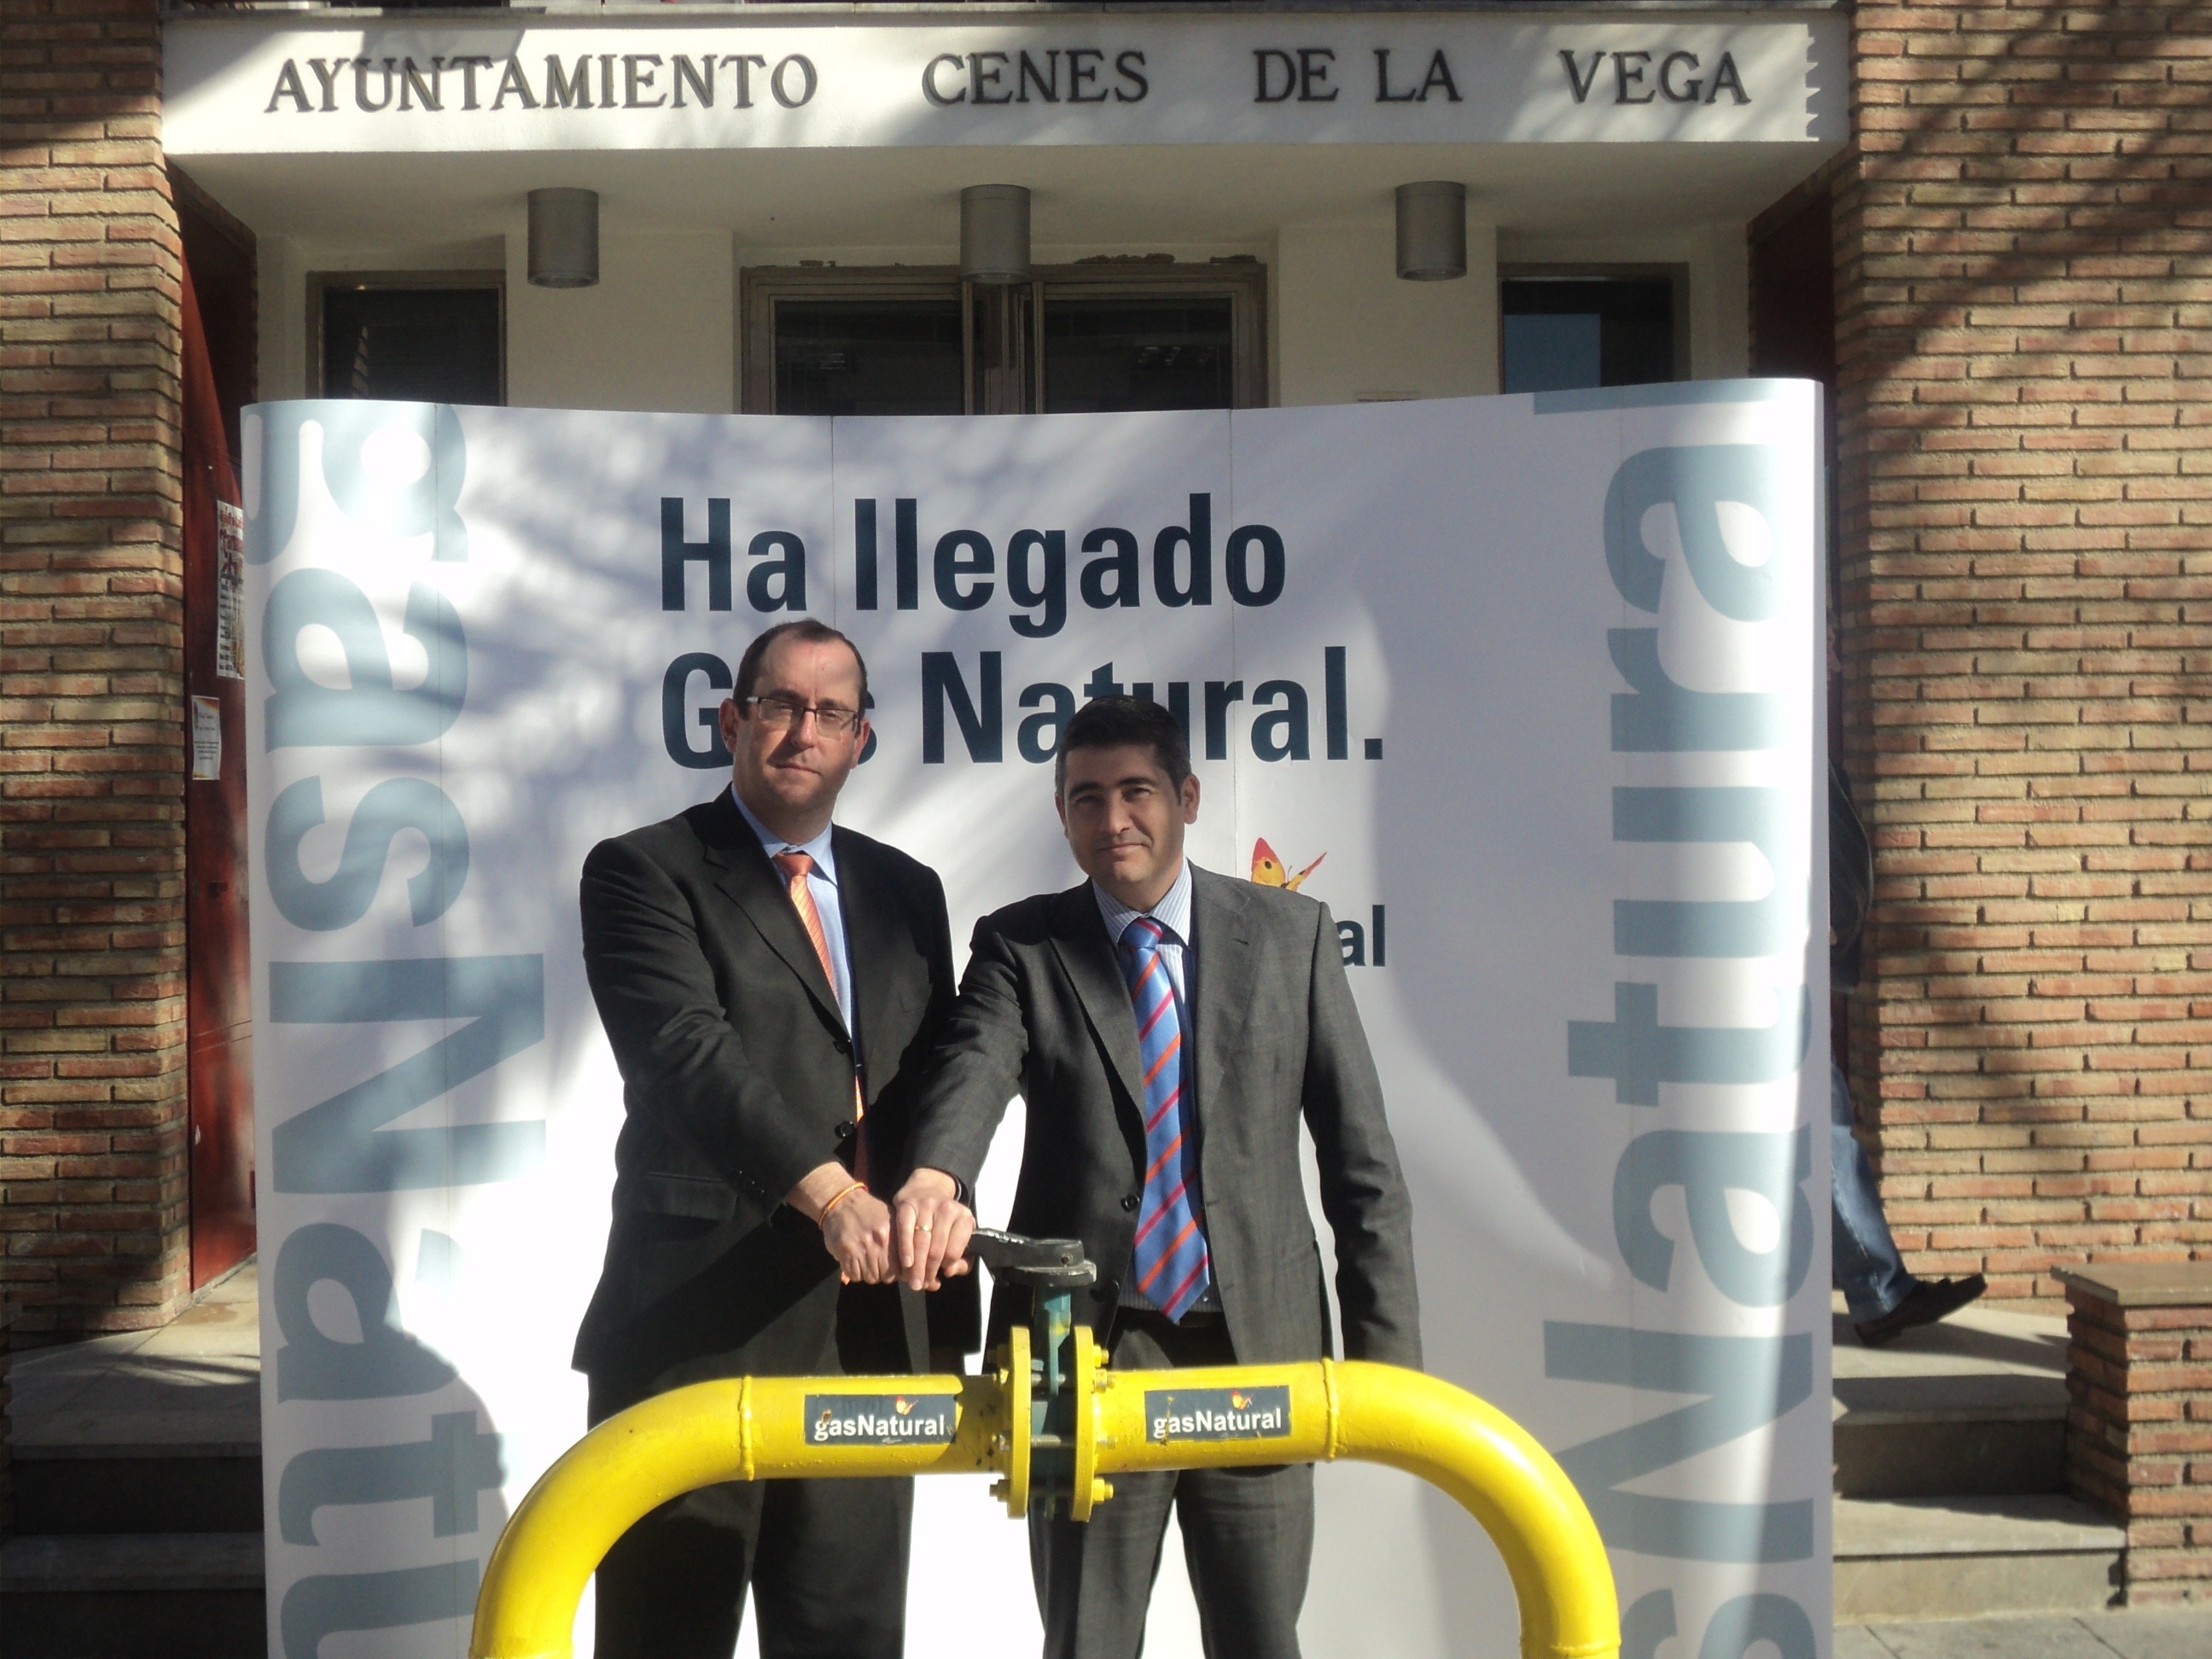 Gas Natural Andalucía invertirá 600.000 euros para llevar el suministro a Cenes de la Vega